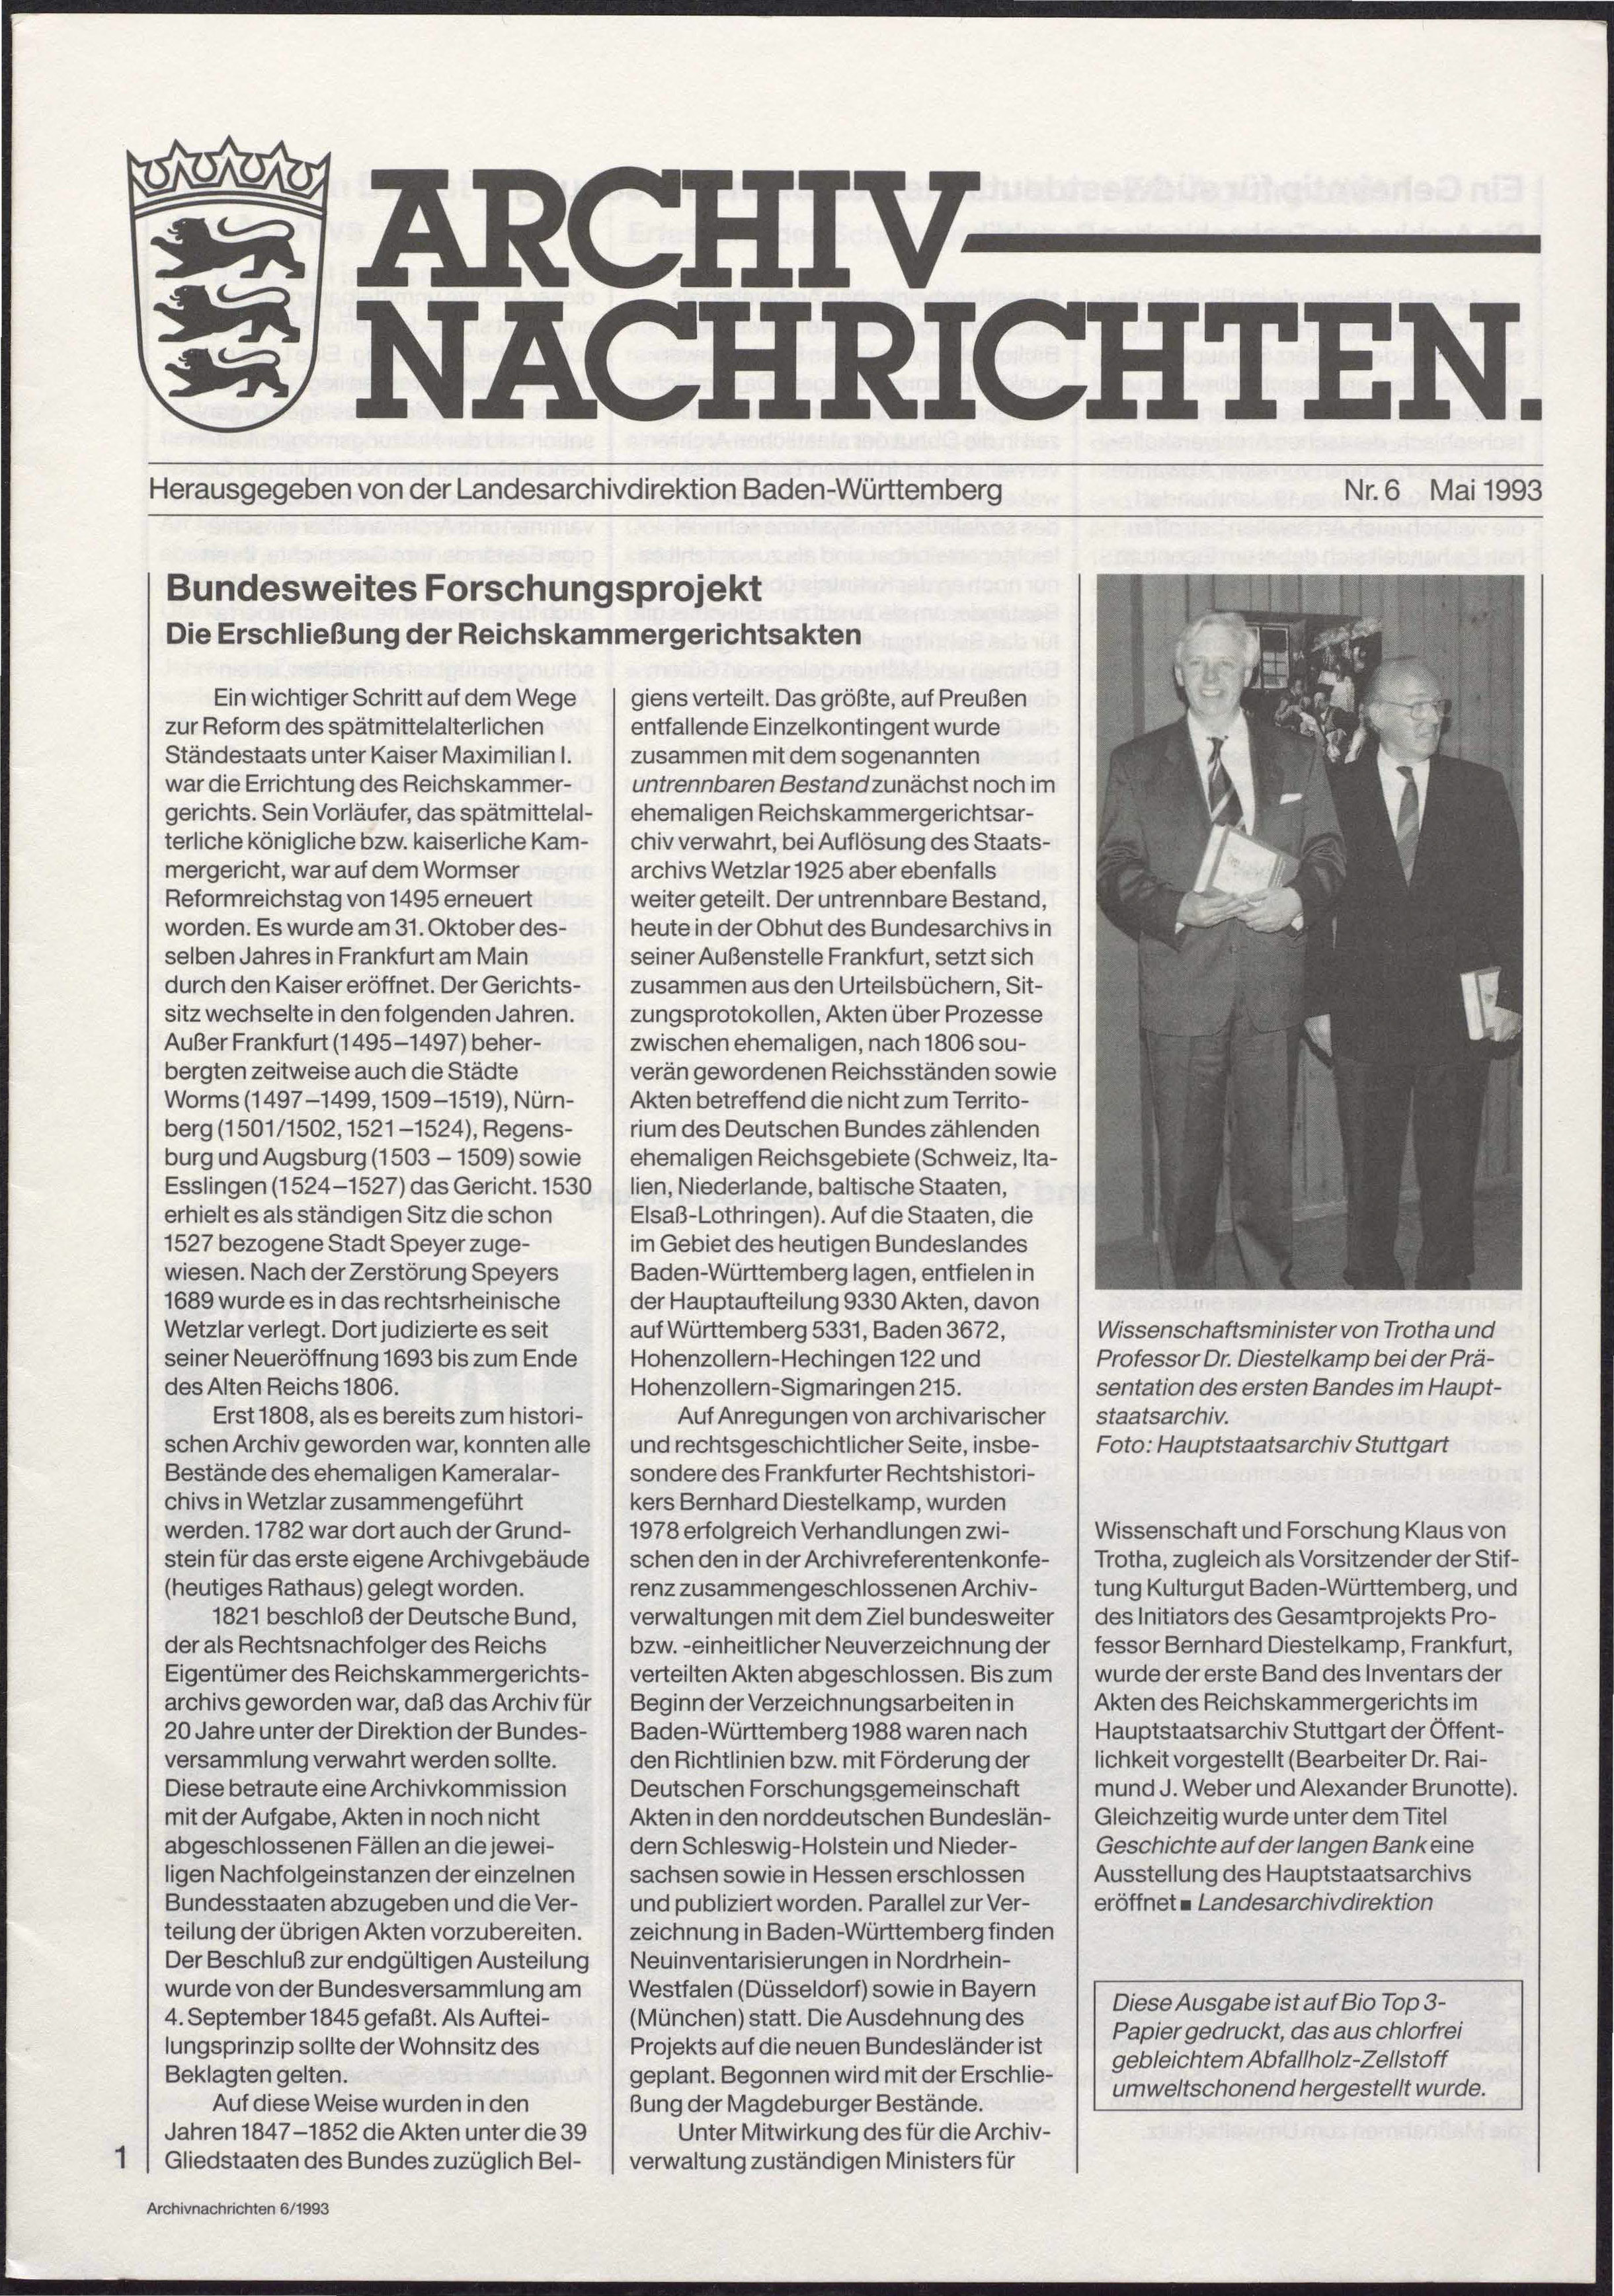                     Ansehen Nr. 6 (1993): Archivnachrichten
                